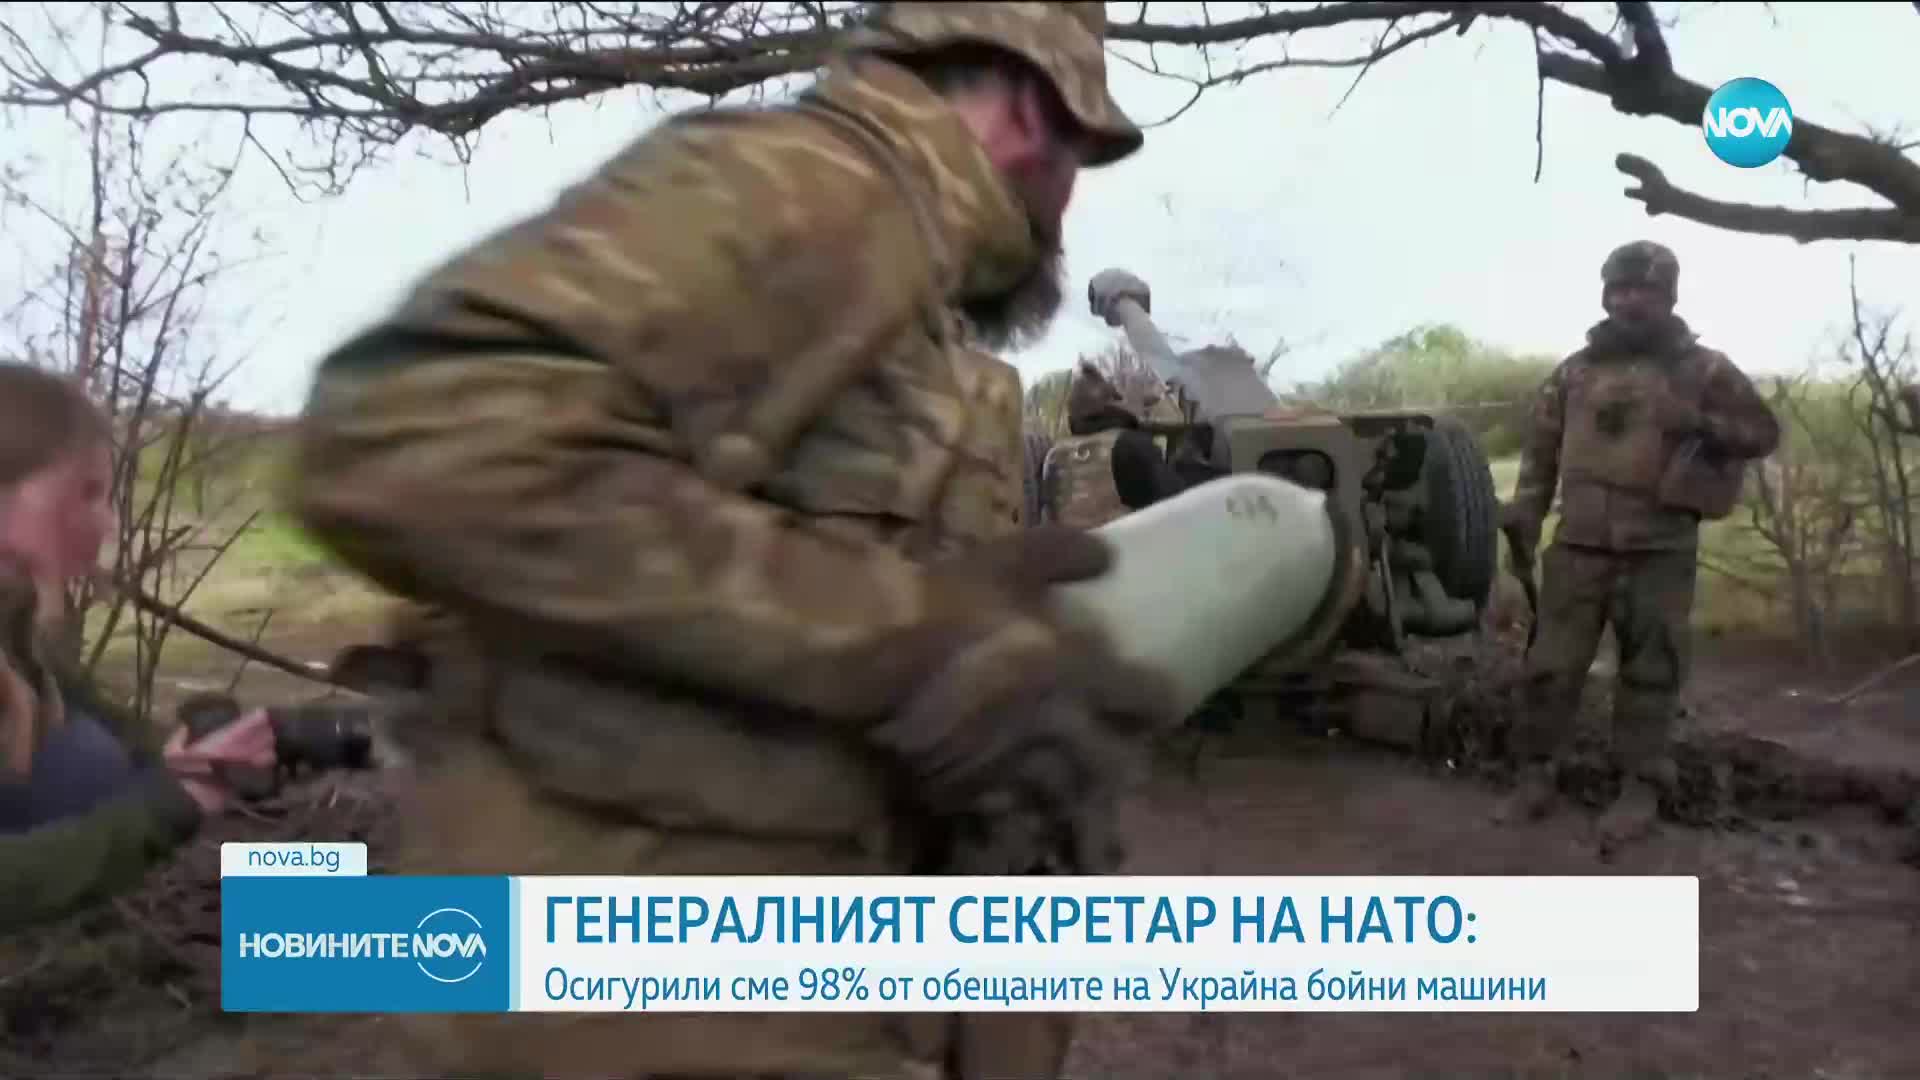 НАТО: Доставили сме на Украйна 230 танка и 1550 бронирани машини